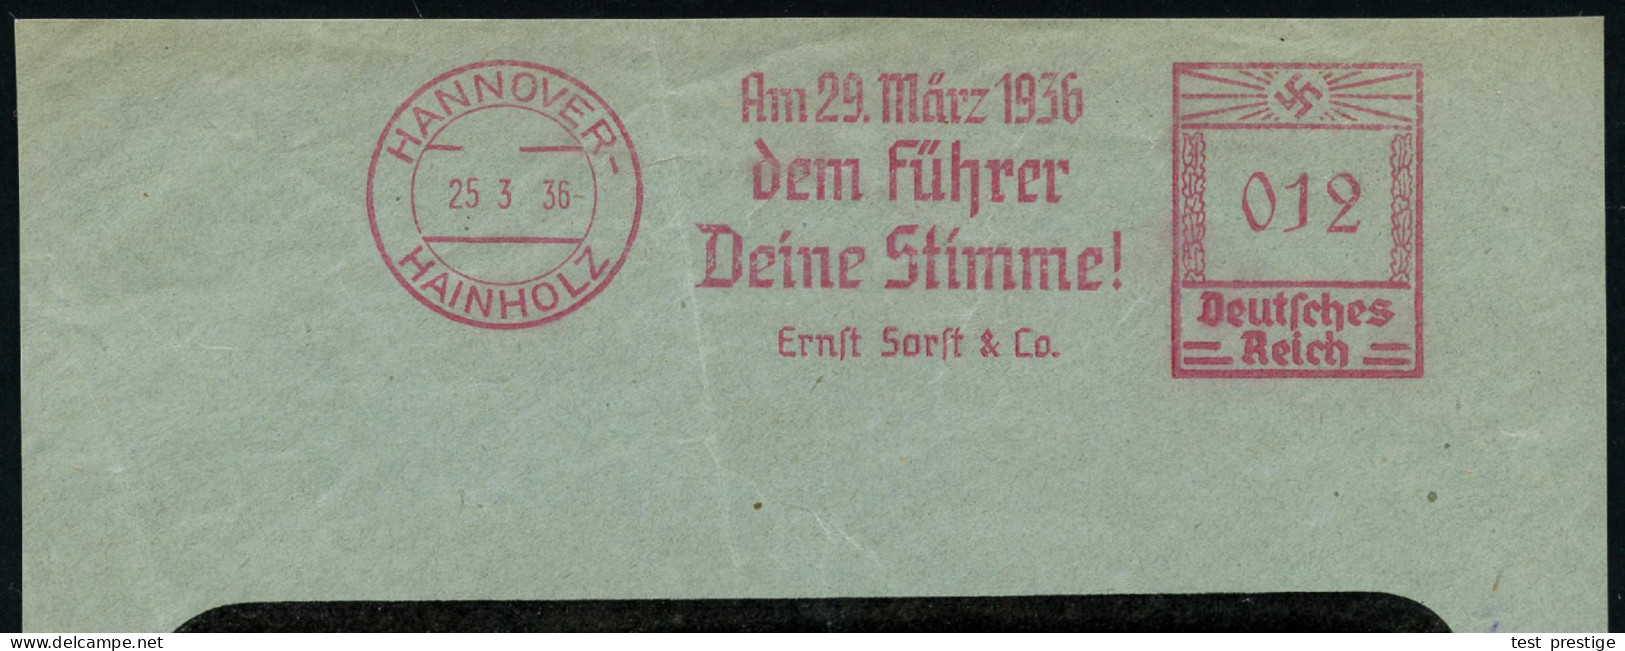 HANNOVER-/ HAINHOLZ/ Am 29.März 1936/ Dem Führer/ Deine Stimme!/ Ernst Sorft & Co. 1936 (25.3.) Sehr Seltener AFS Franco - Otros